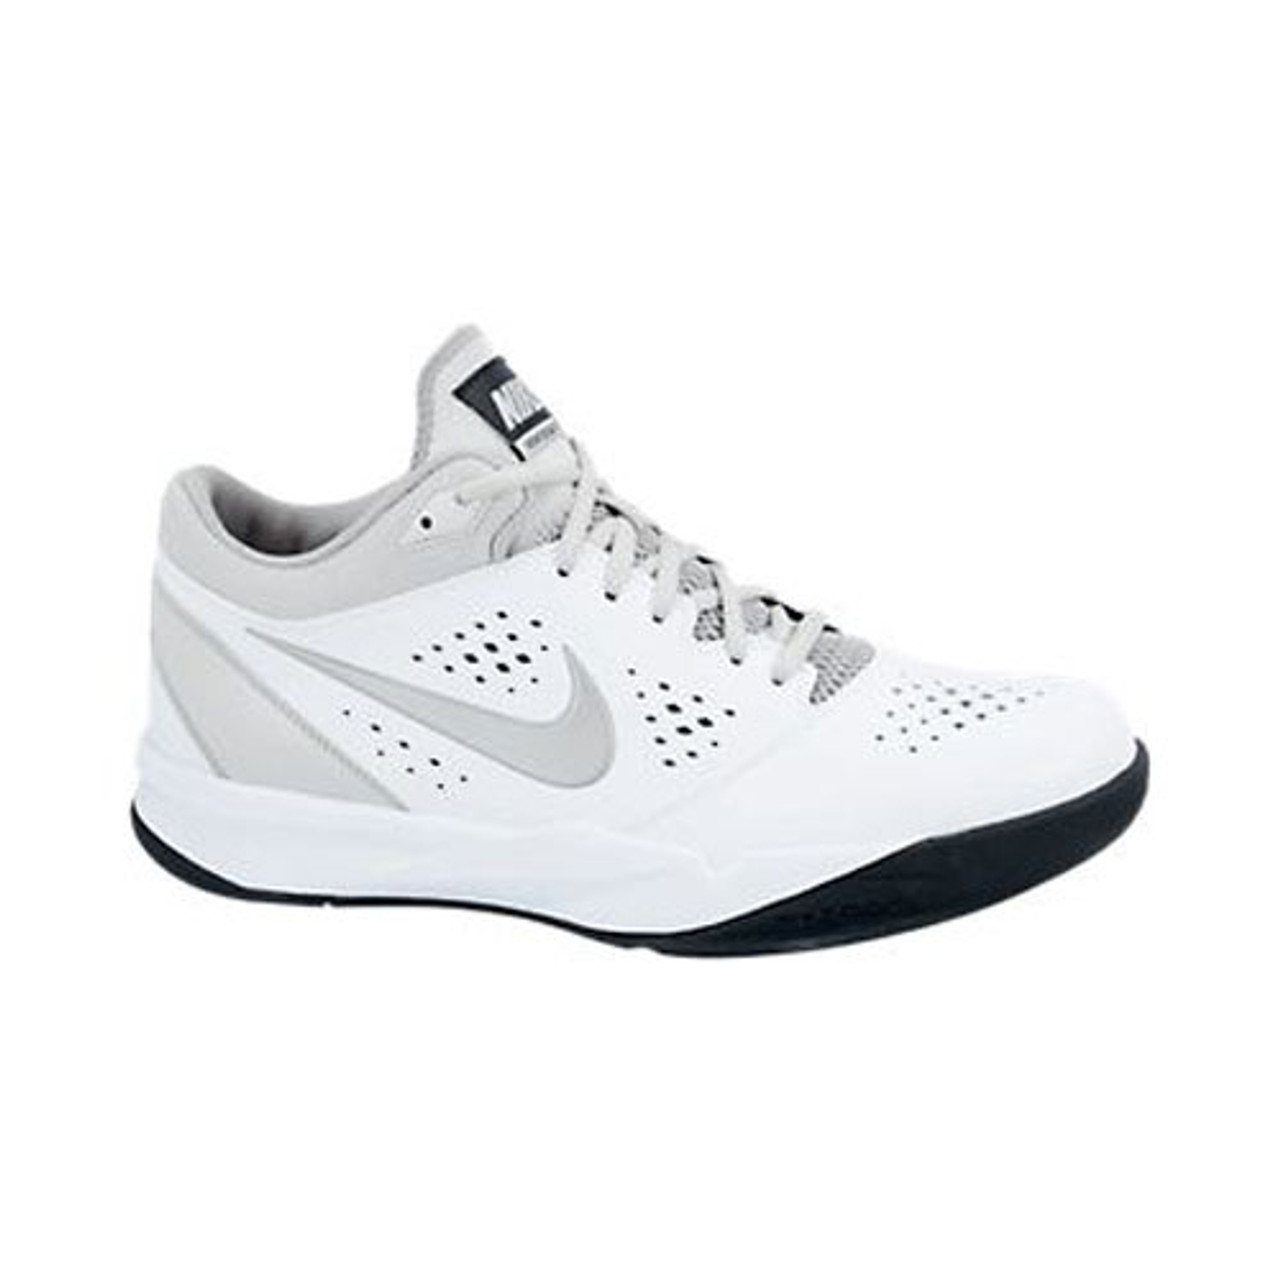 Nike Zoom Attero White/Silver - | Nike & More Shoolu.com | Shoolu.com